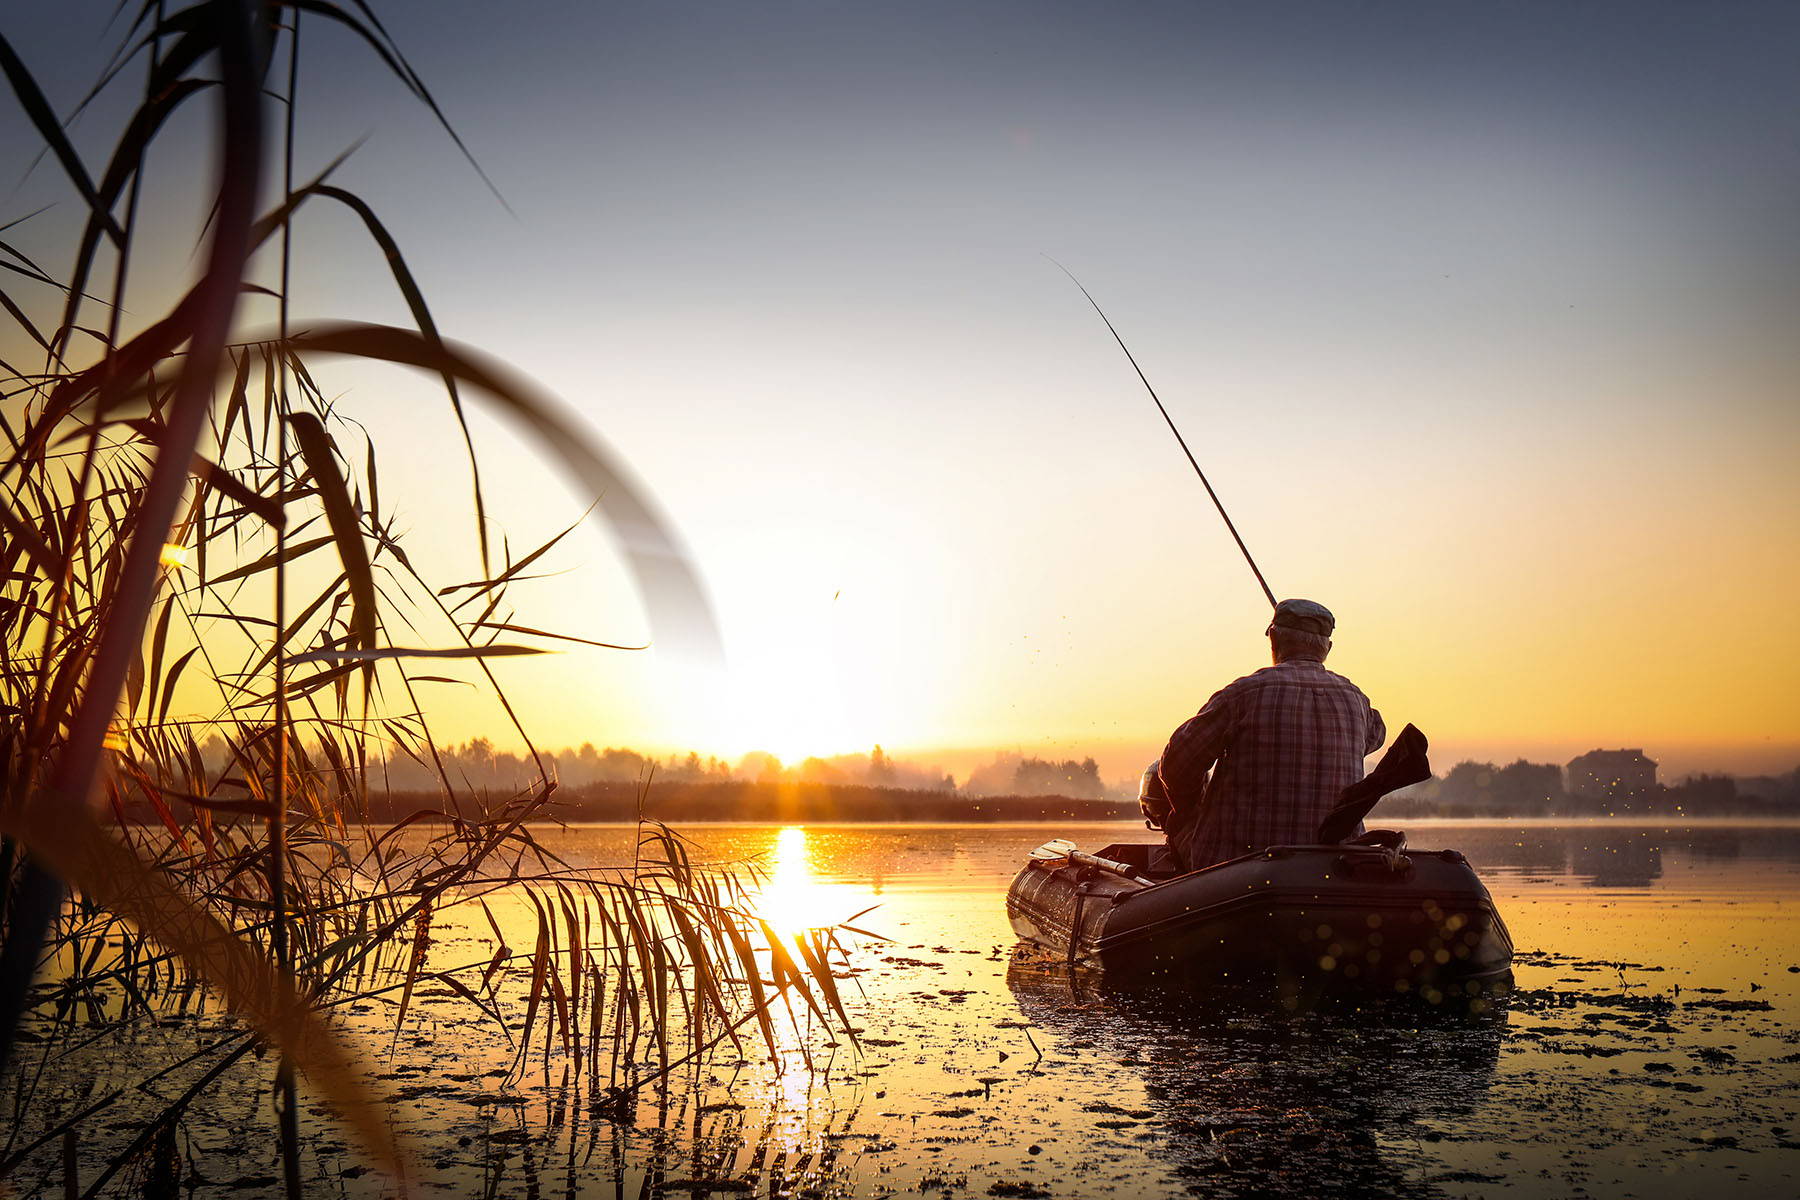 Man Fishing in Boat at Dawn